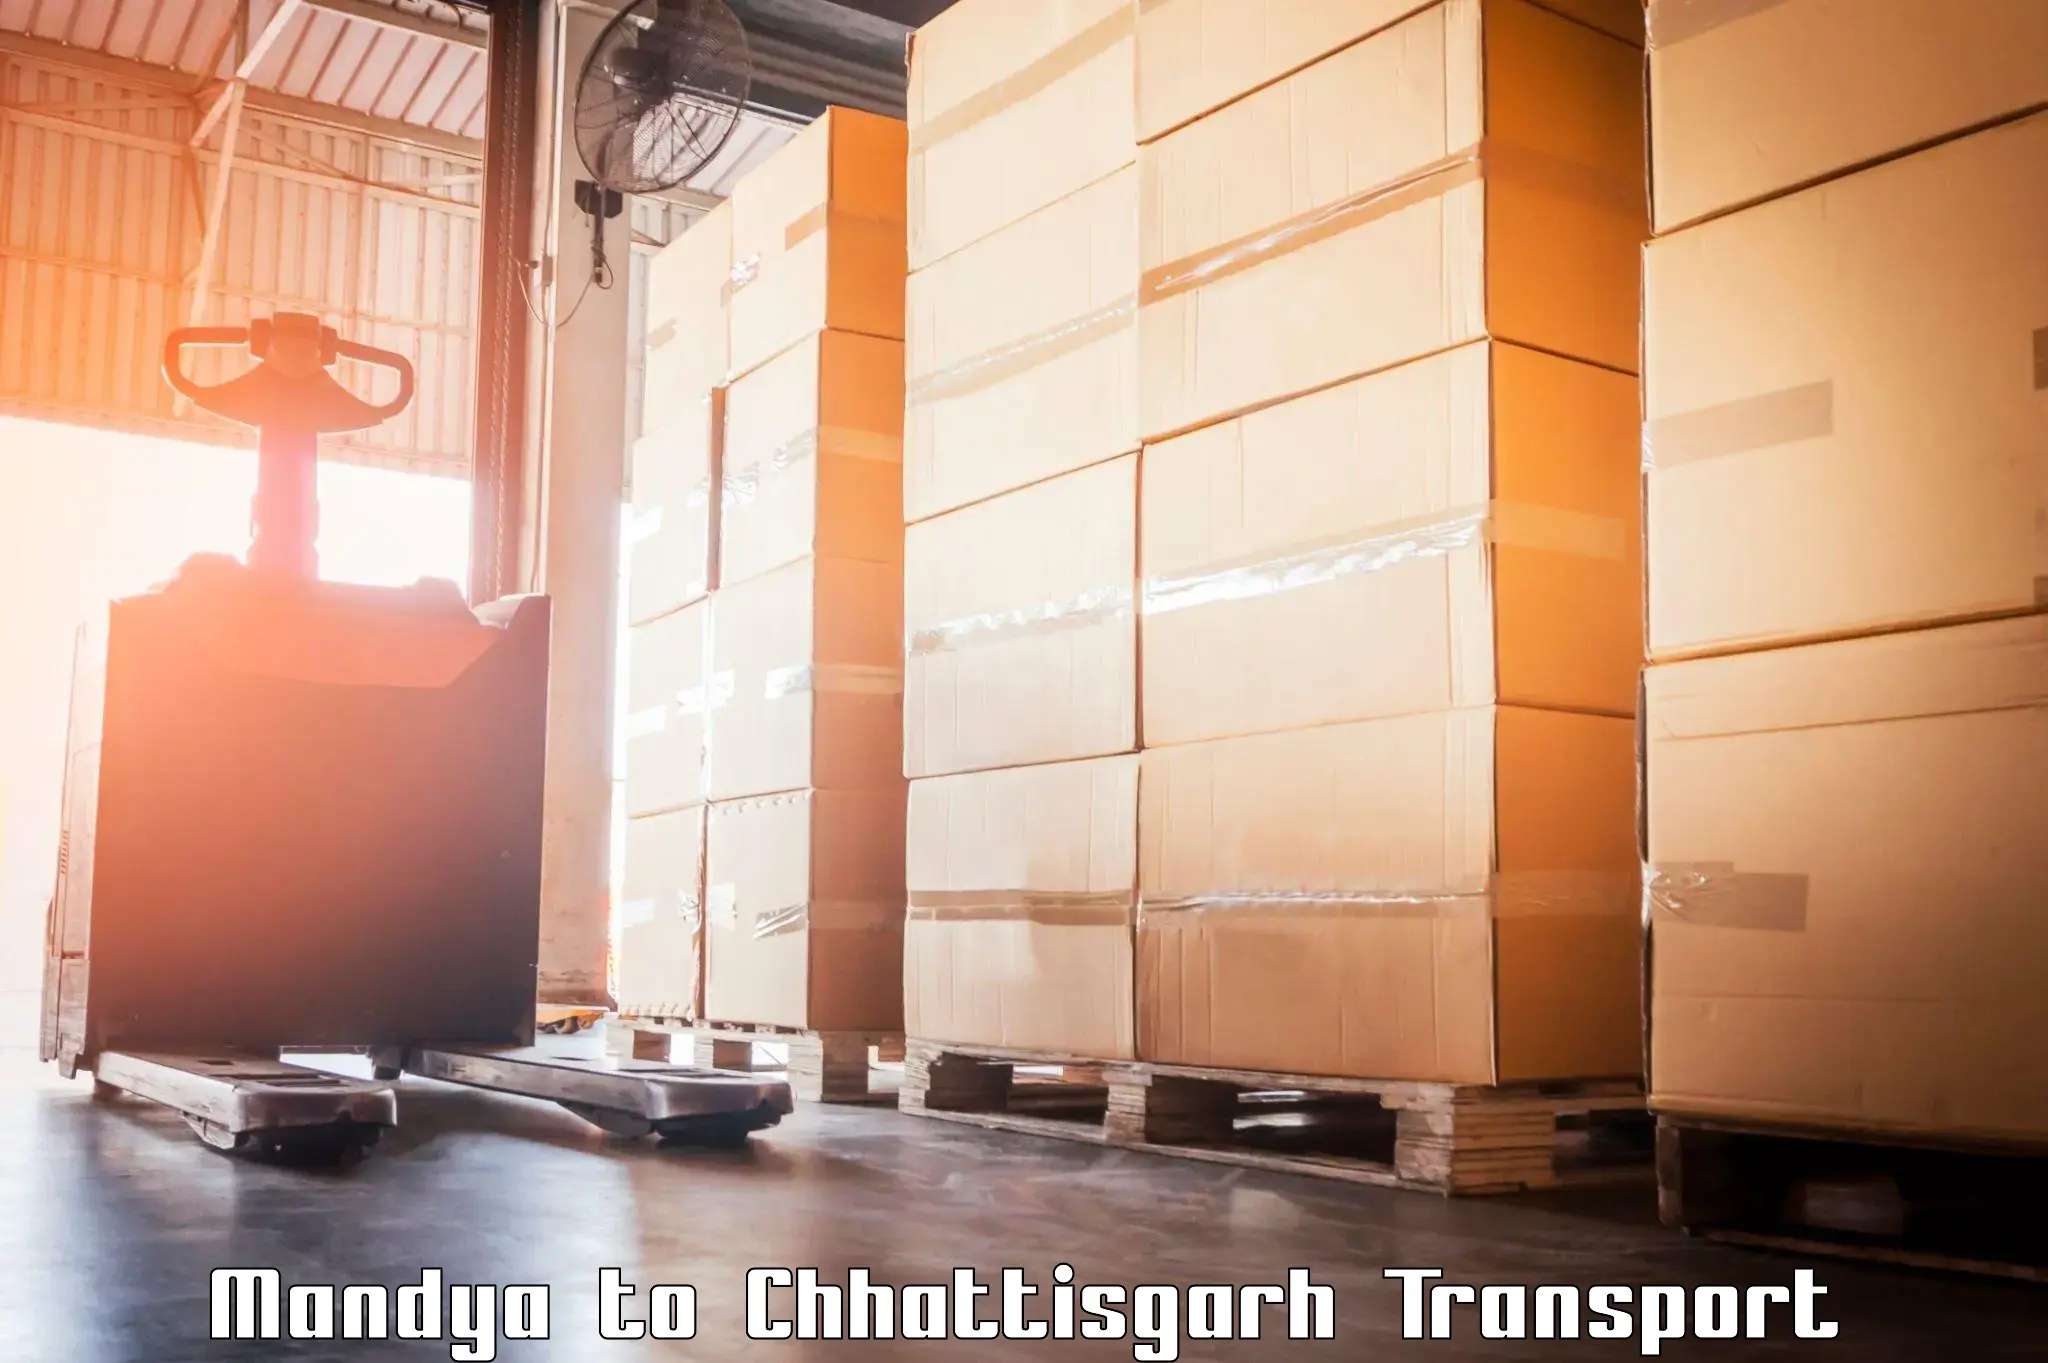 Container transport service in Mandya to Bijapur Chhattisgarh